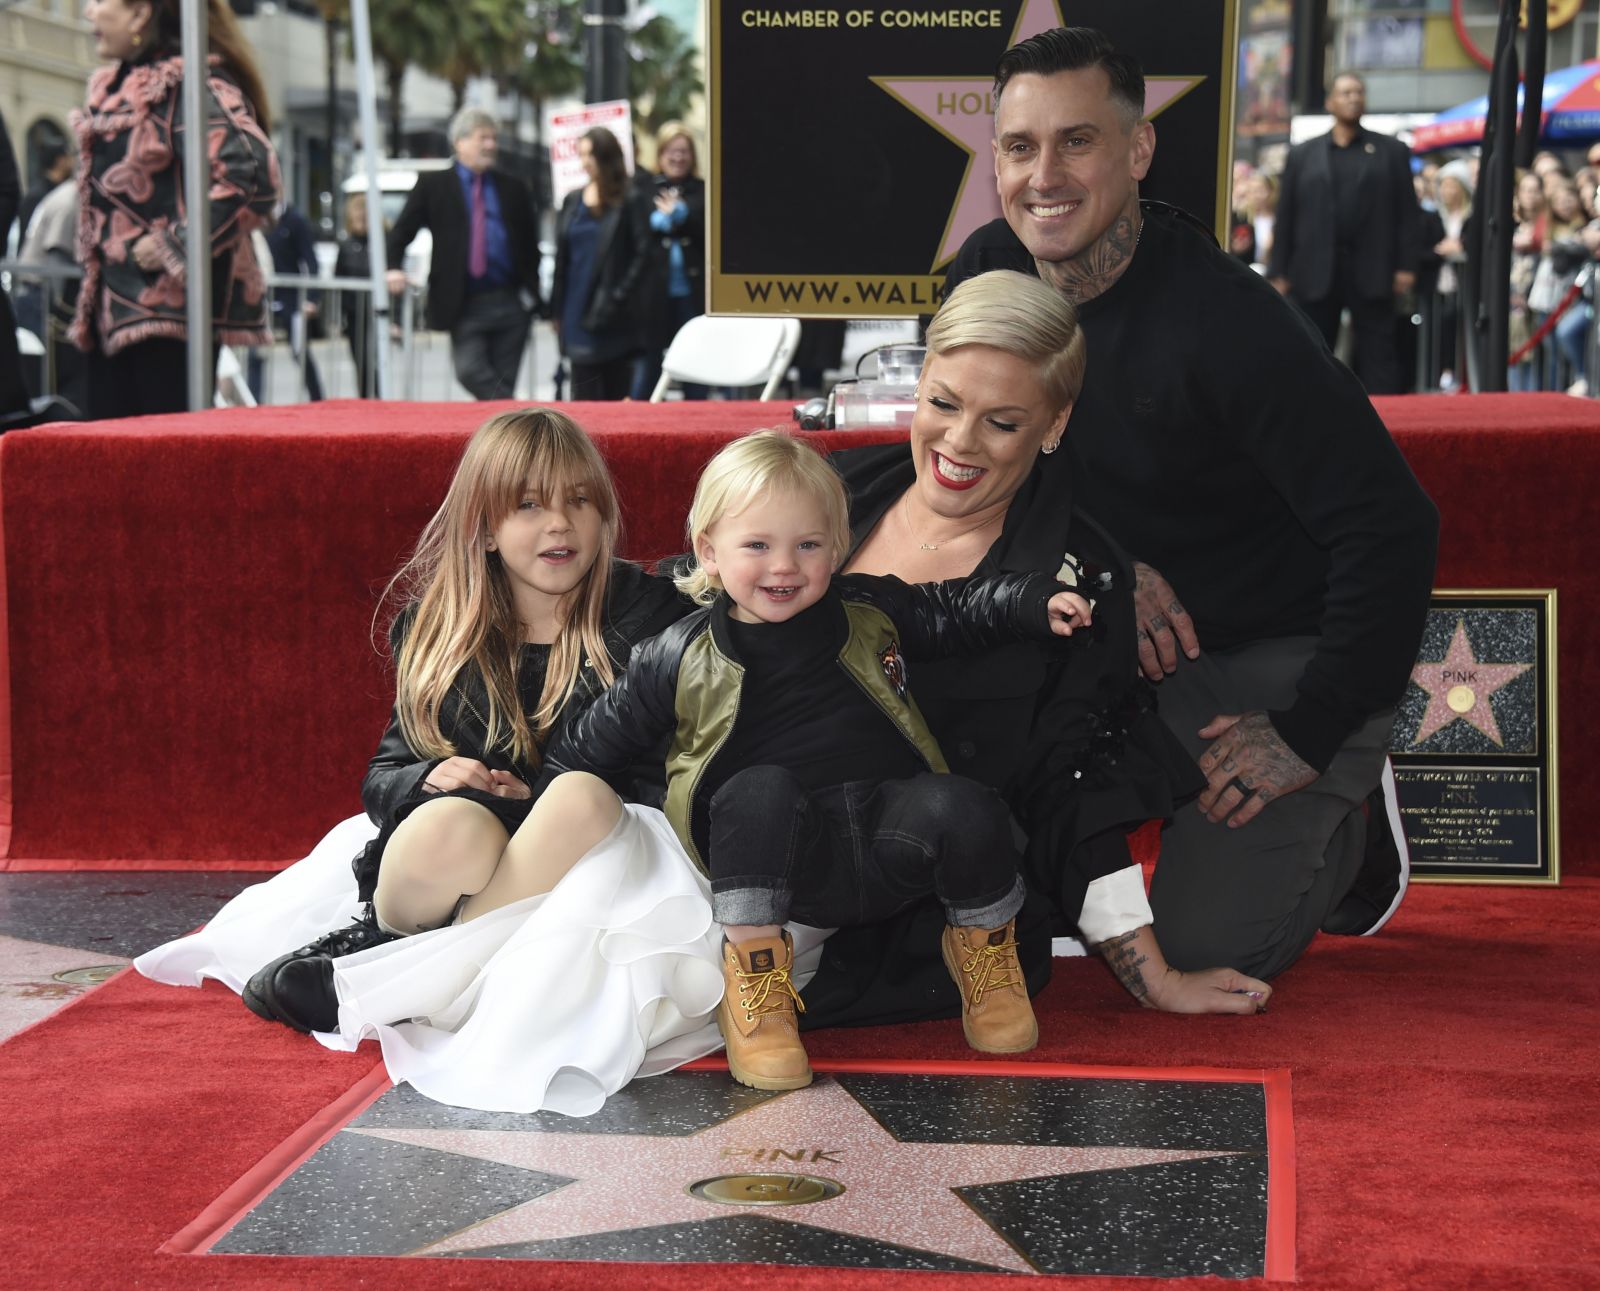 Deti speváčky Pink obdarovali svoju mamu vlastnoručne vyrobenou cenou Grammy, keď žiadnu oficiálnu nezískala